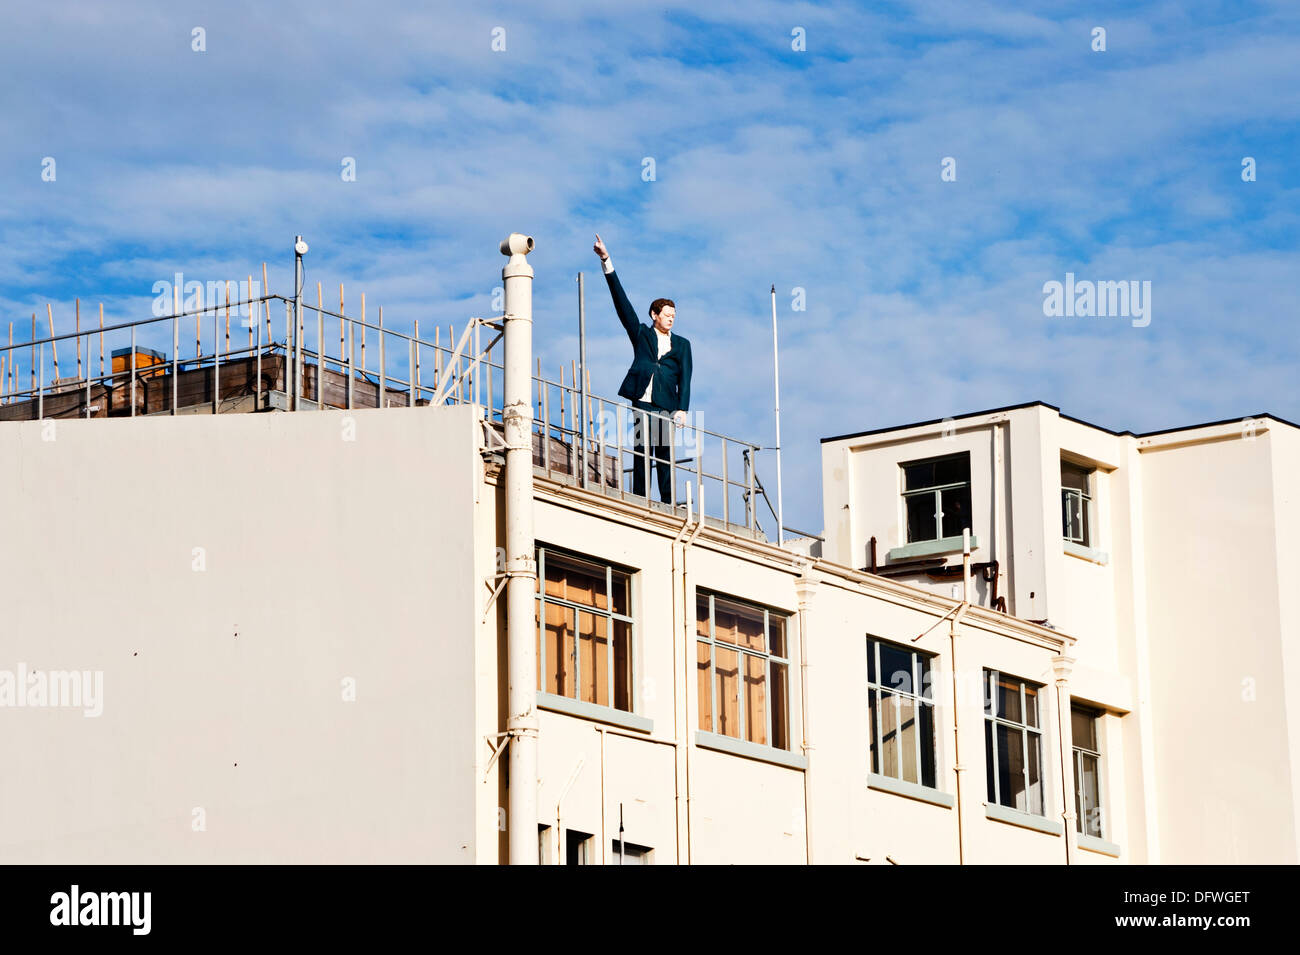 Christchurch, South Island, in Nuova Zelanda. Uomo in tuta manichino rivolto al cielo. Arte pubblica a seguito dei terremoti, 2013. Foto Stock